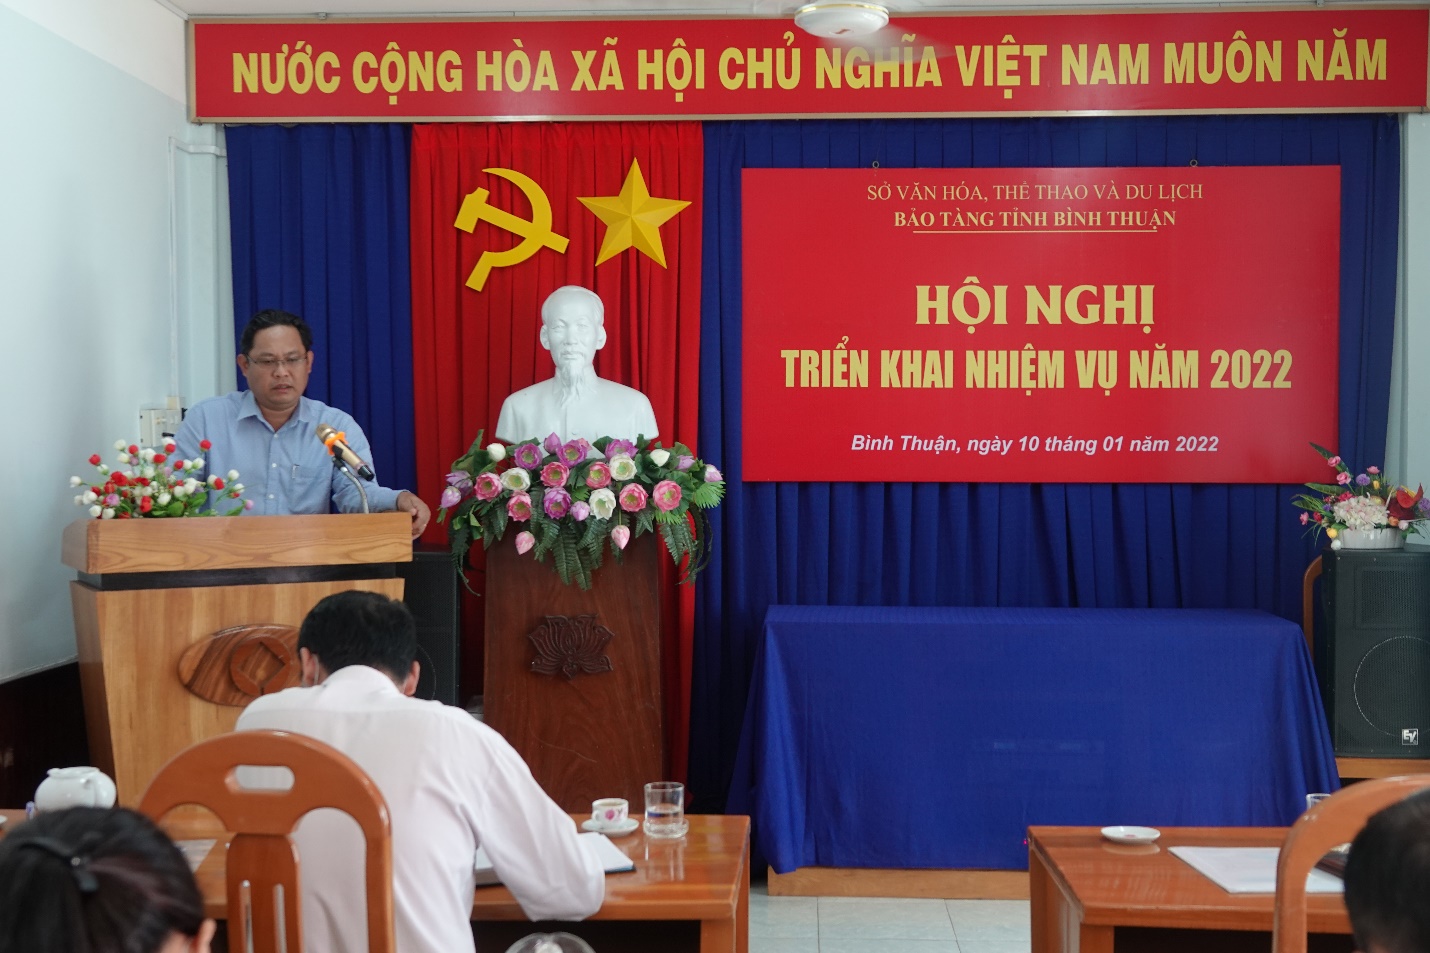 Bảo tàng tỉnh Bình Thuận tổ chức Hội nghị triển khai nhiệm vụ năm 2022.